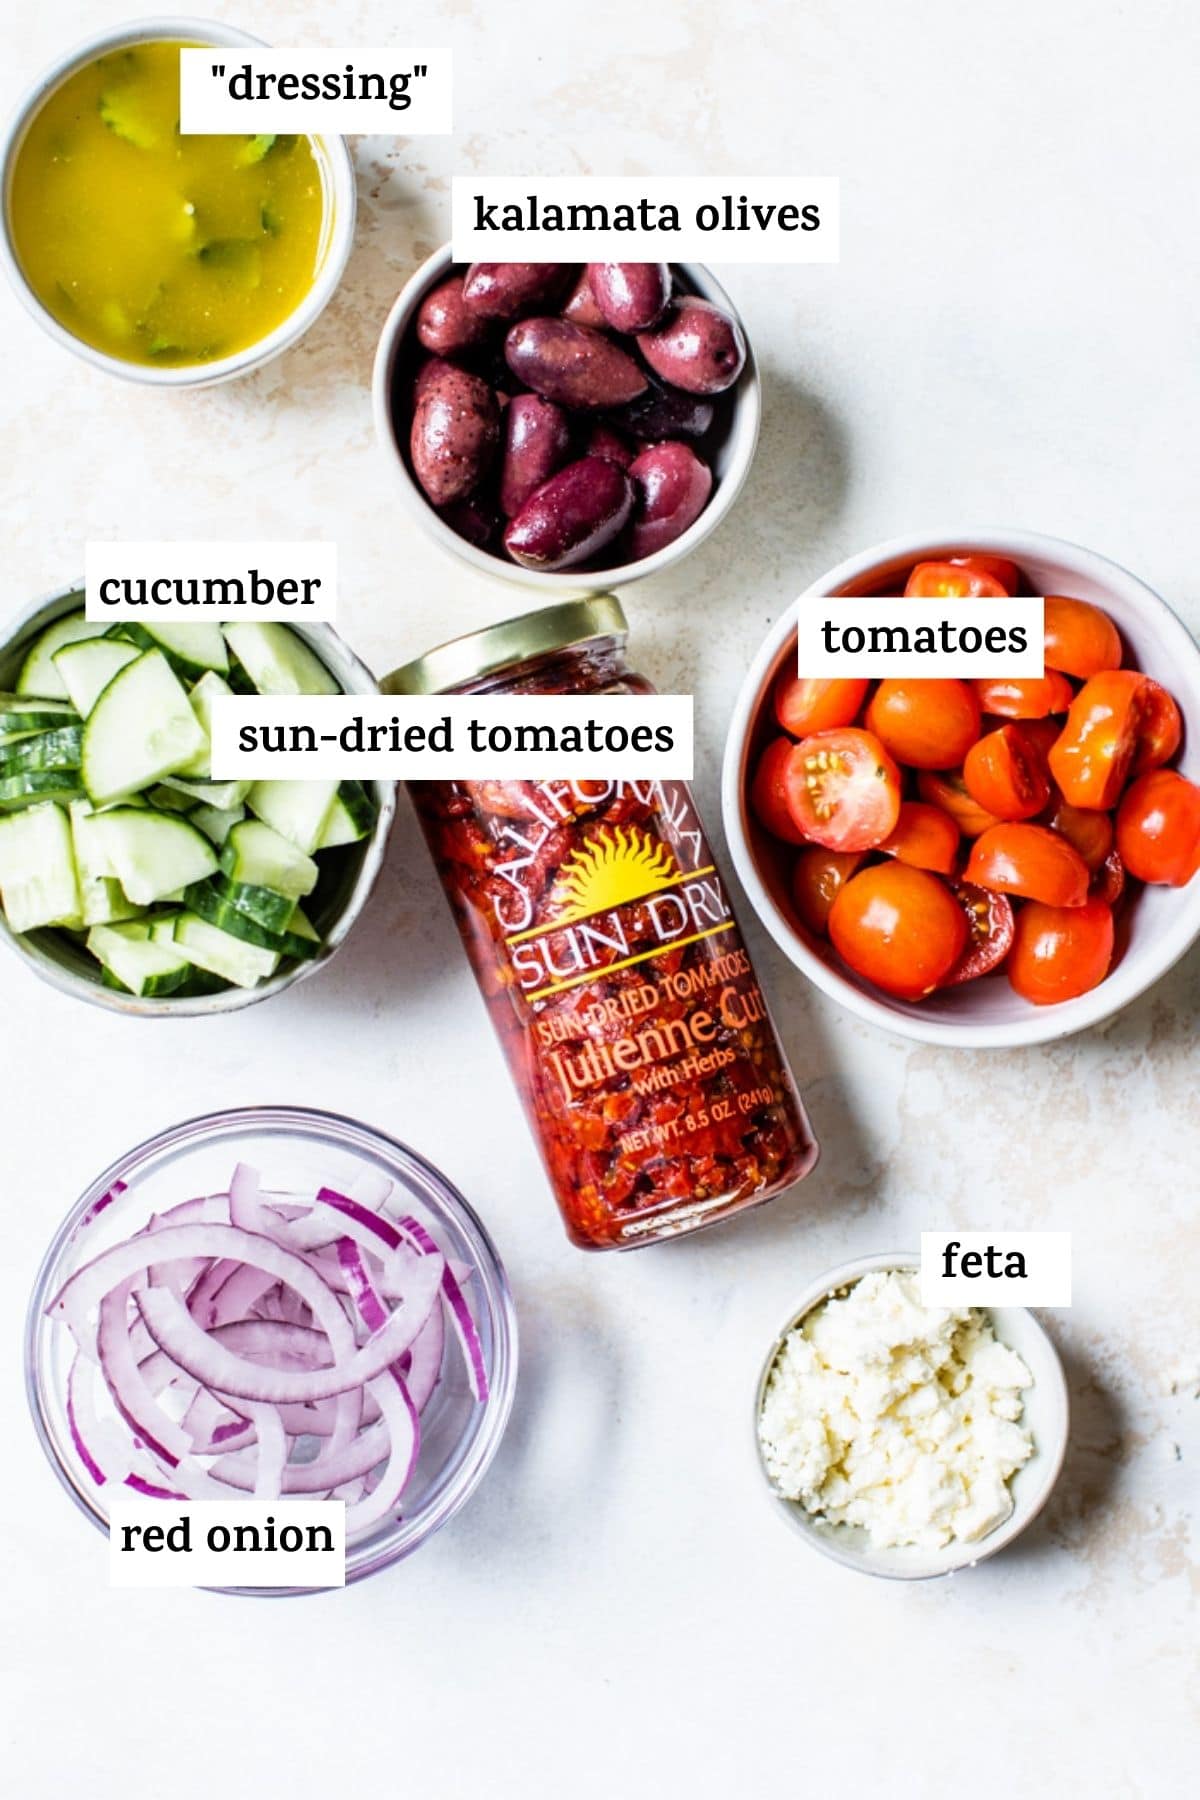 ingrédients de la salade de pâtes comme les tomates séchées au soleil et l'oignon rouge